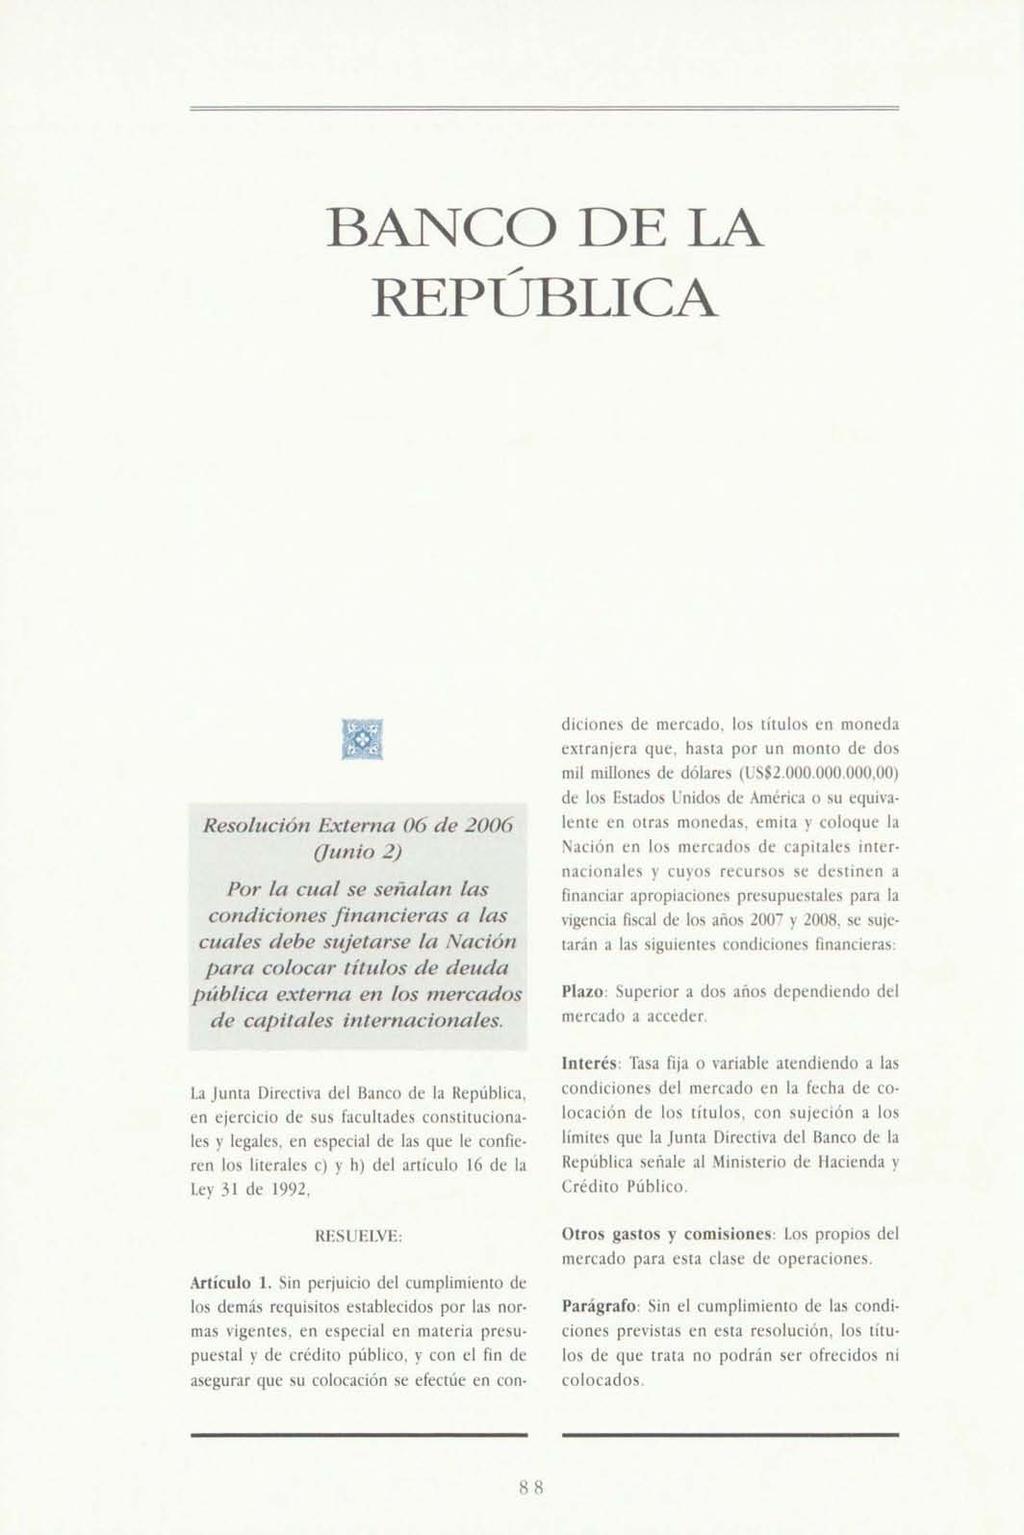 BANCO DE LA REPÚBLICA Resolución hxterna 06 de 2006 (Junio 2) Por la cual se señalan las condiciones financieras a las cuales debe sujetarse la Nación para colocar títulos de deuda pública externa en